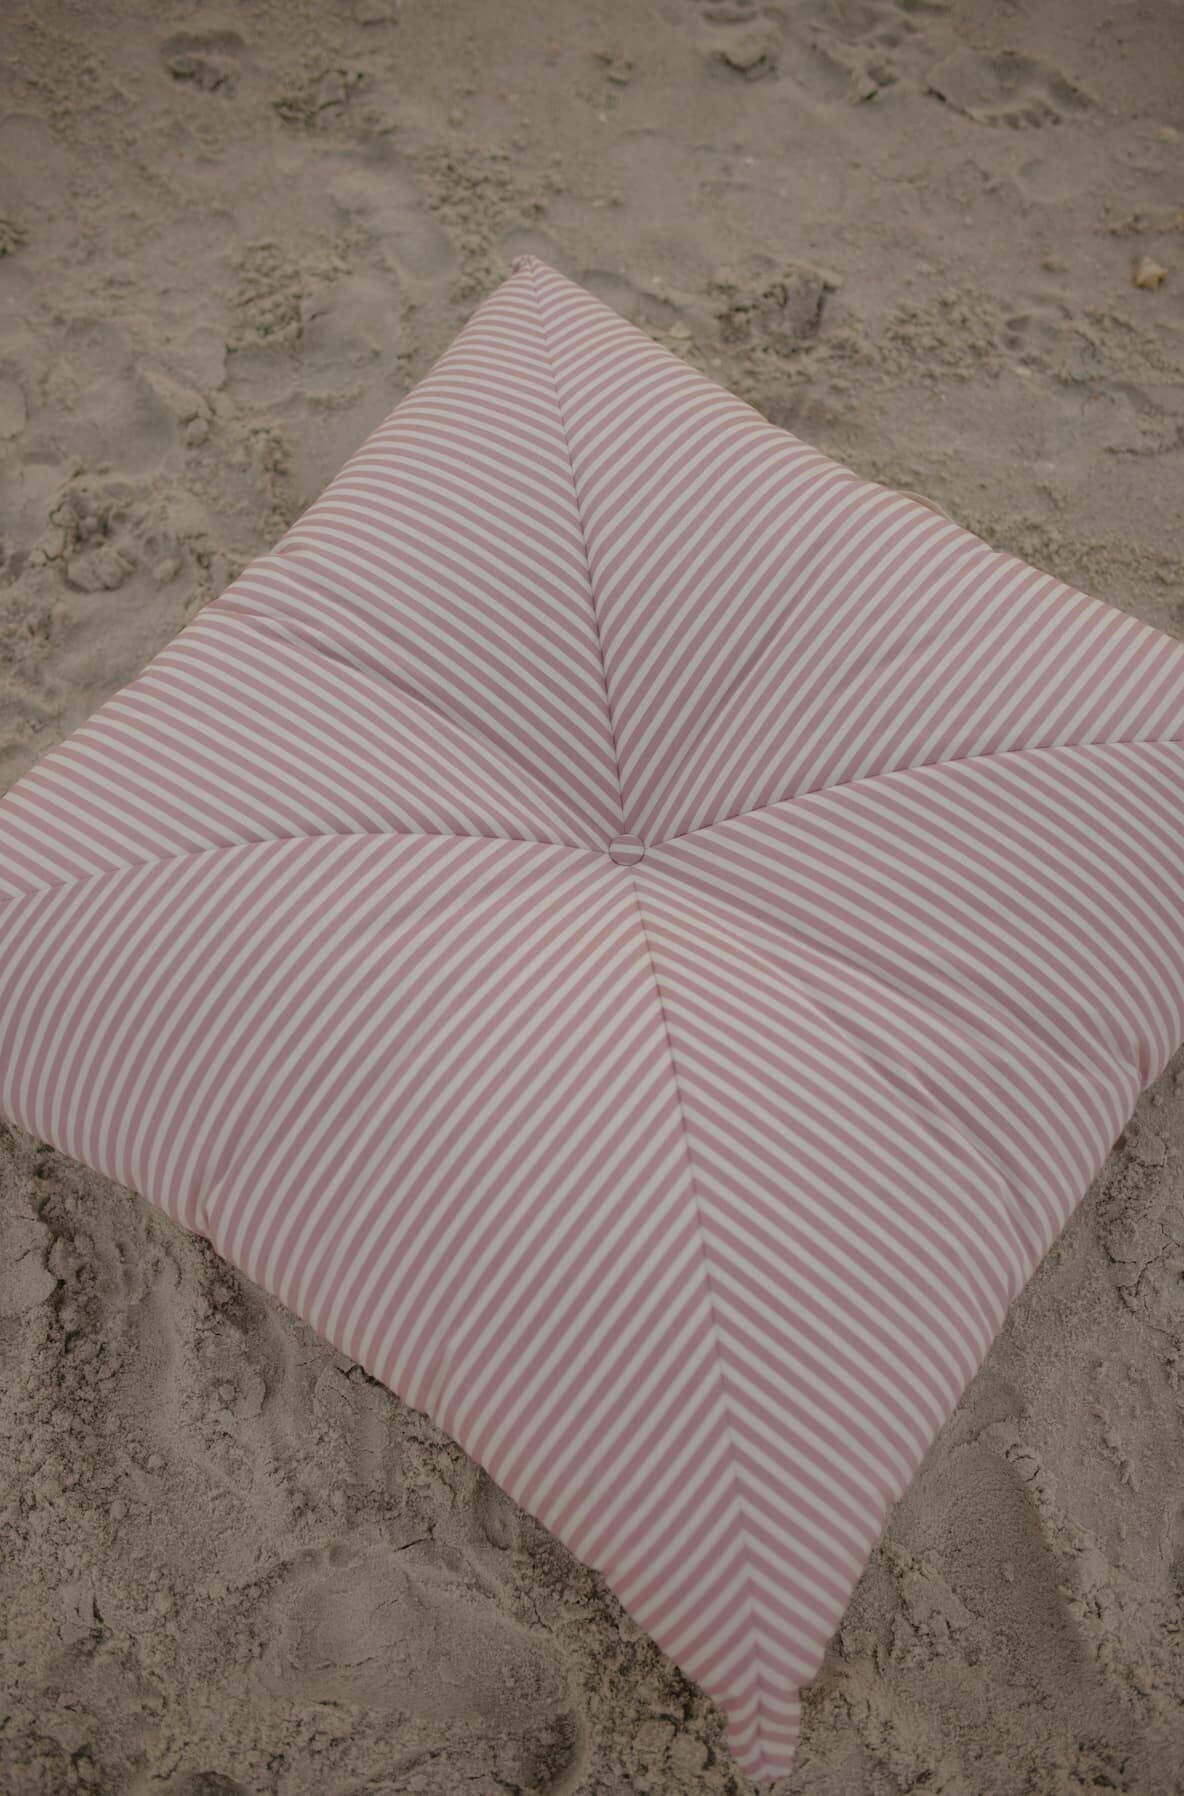 pink floor cushion on the beach